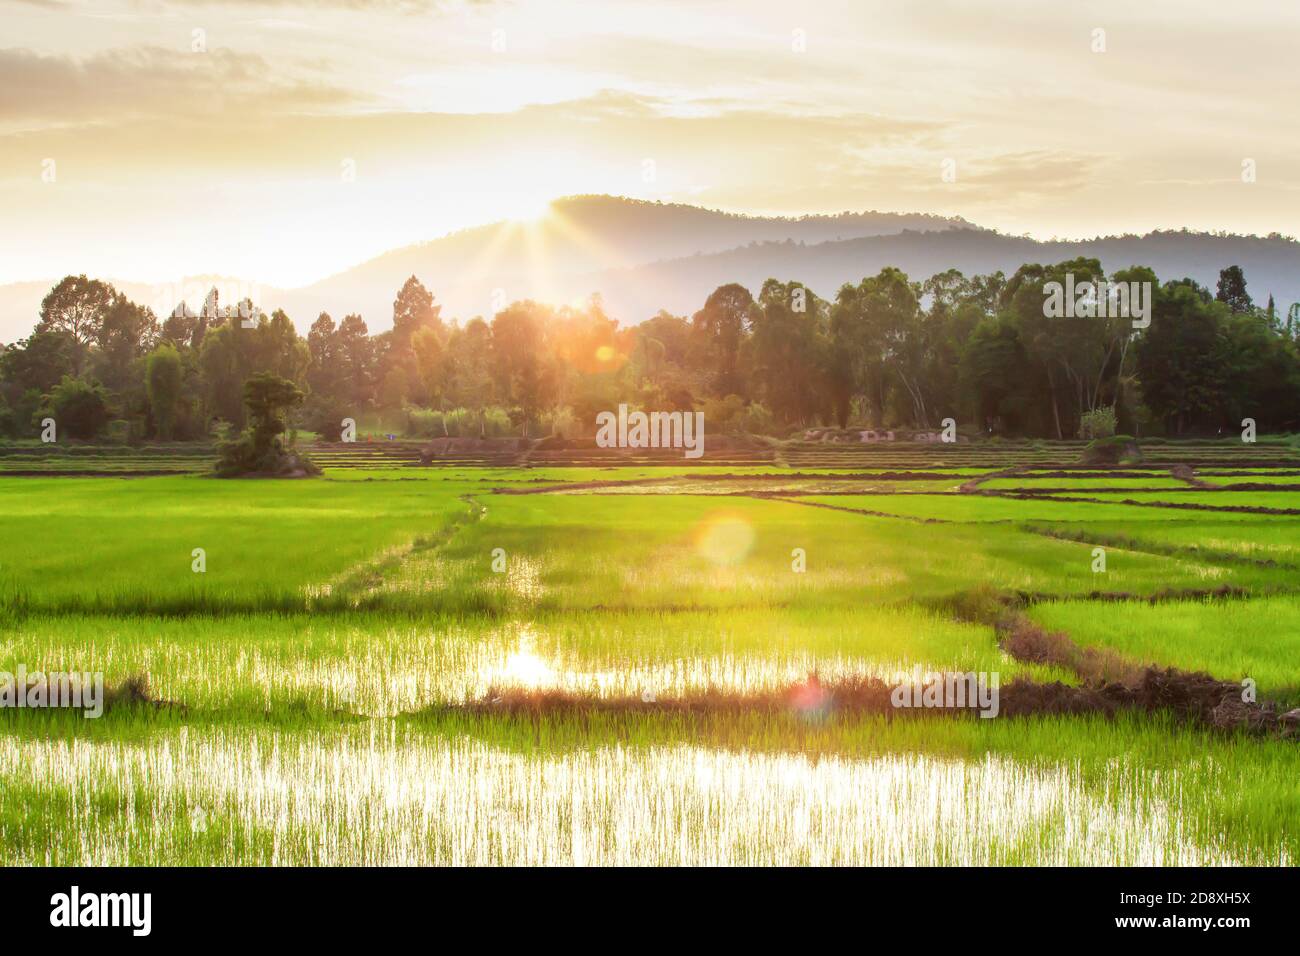 Paysage de rizières au coucher du soleil, plantules de riz vert croissant dans les champs, le soleil se coucher derrière une montagne en arrière-plan. Nord de la Thaïlande. Banque D'Images